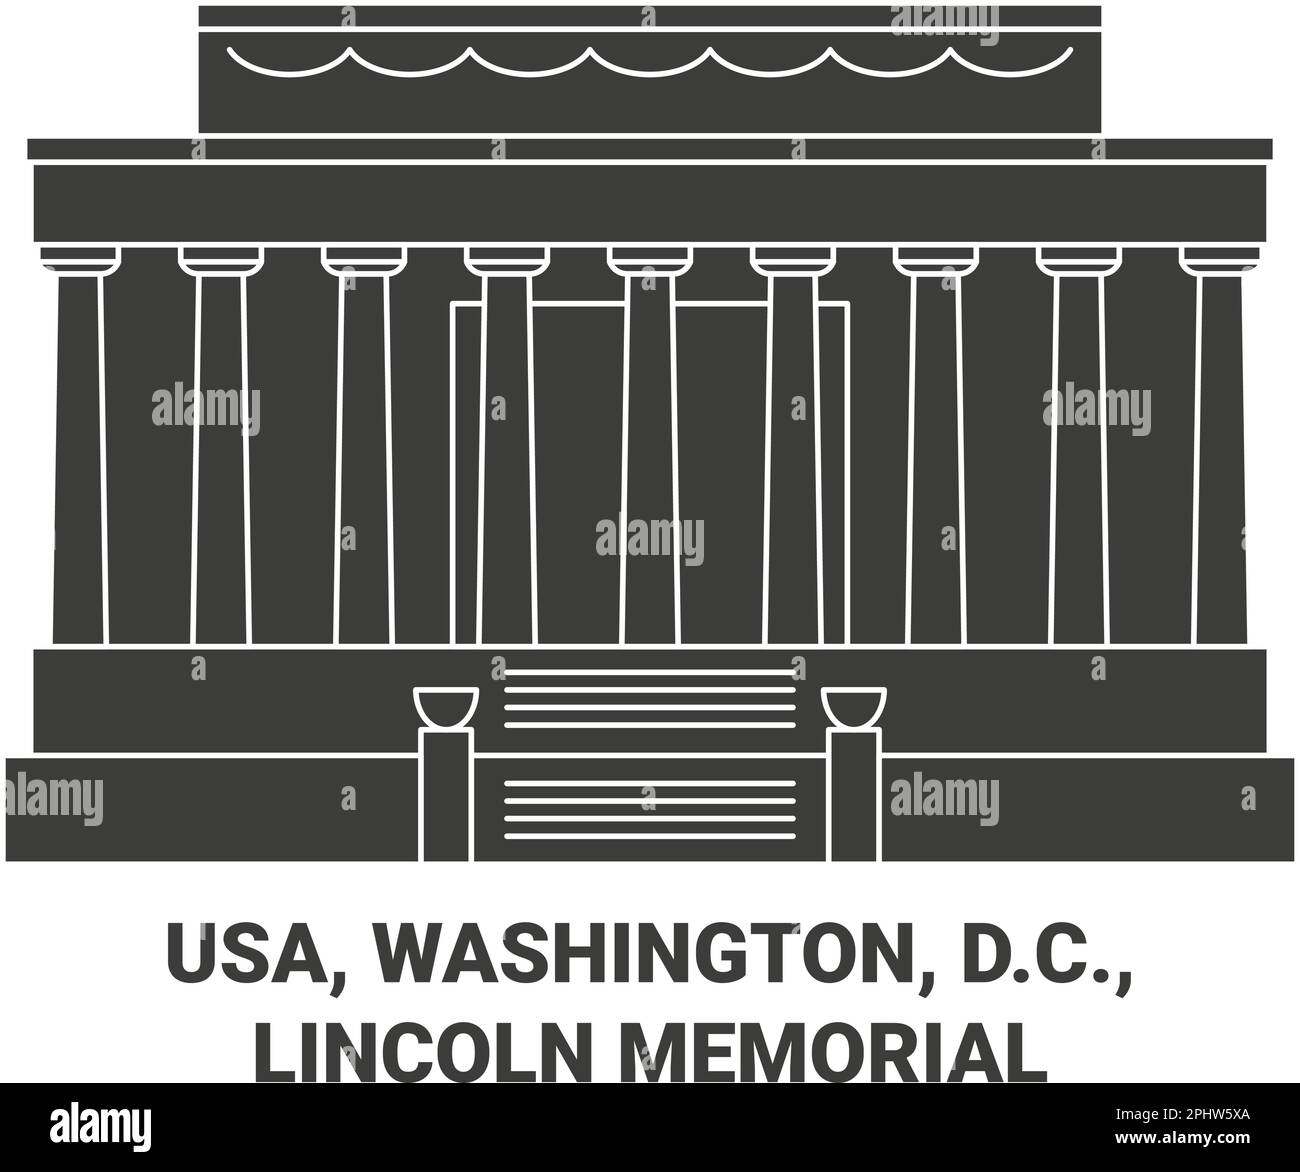 USA, Washington, D.C., Lincoln Memorial Reise-Wahrzeichen-Vektordarstellung Stock Vektor